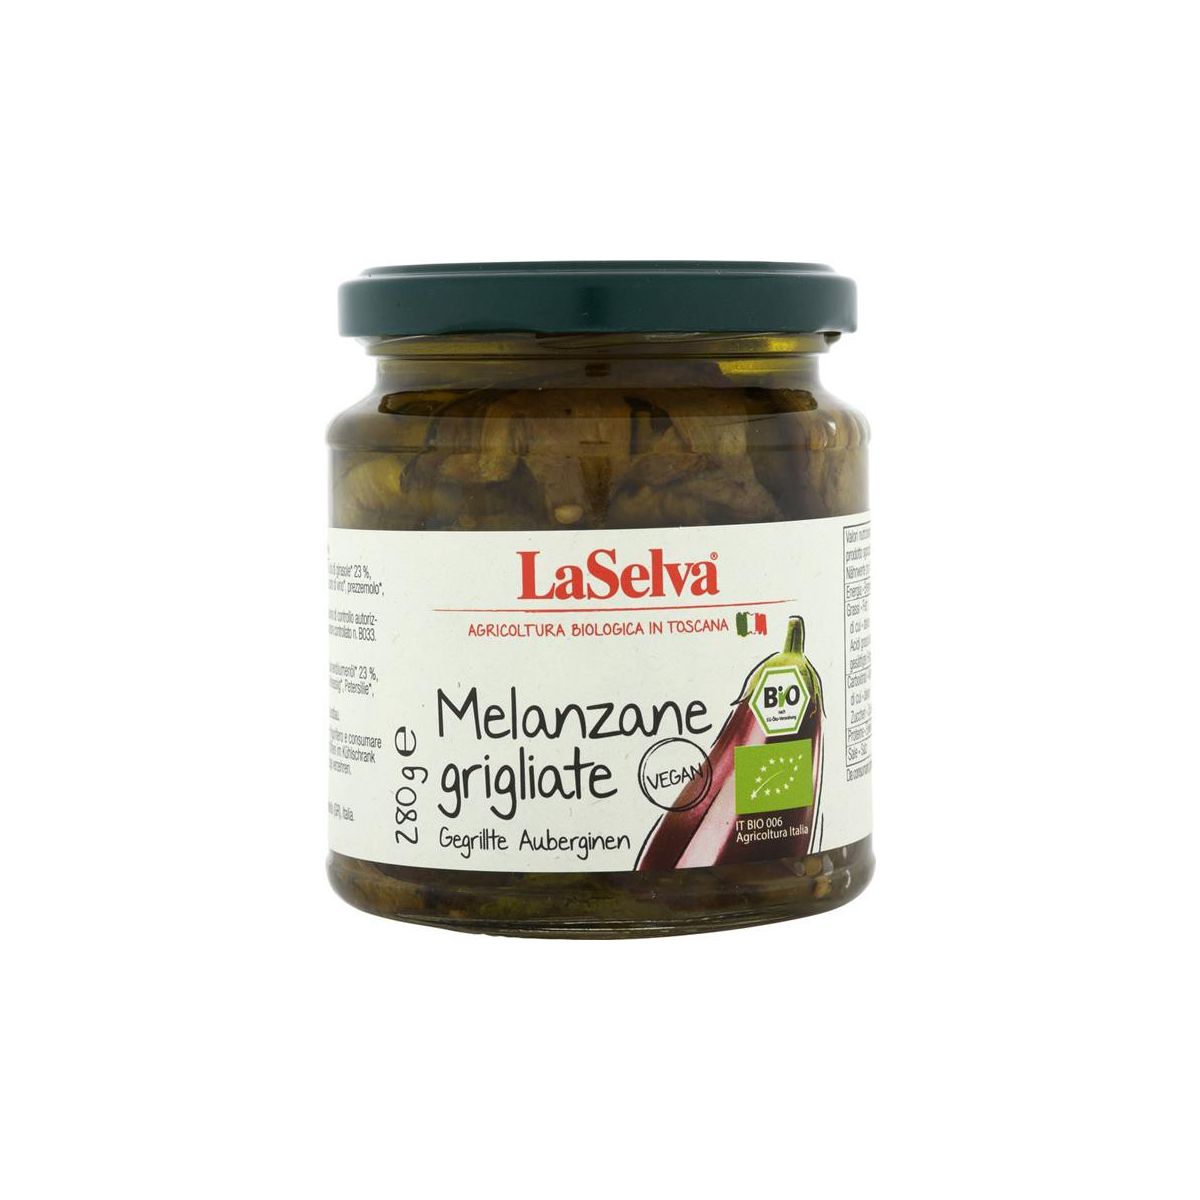 LaSelva - Gegrillte Auberginen in Olivenöl